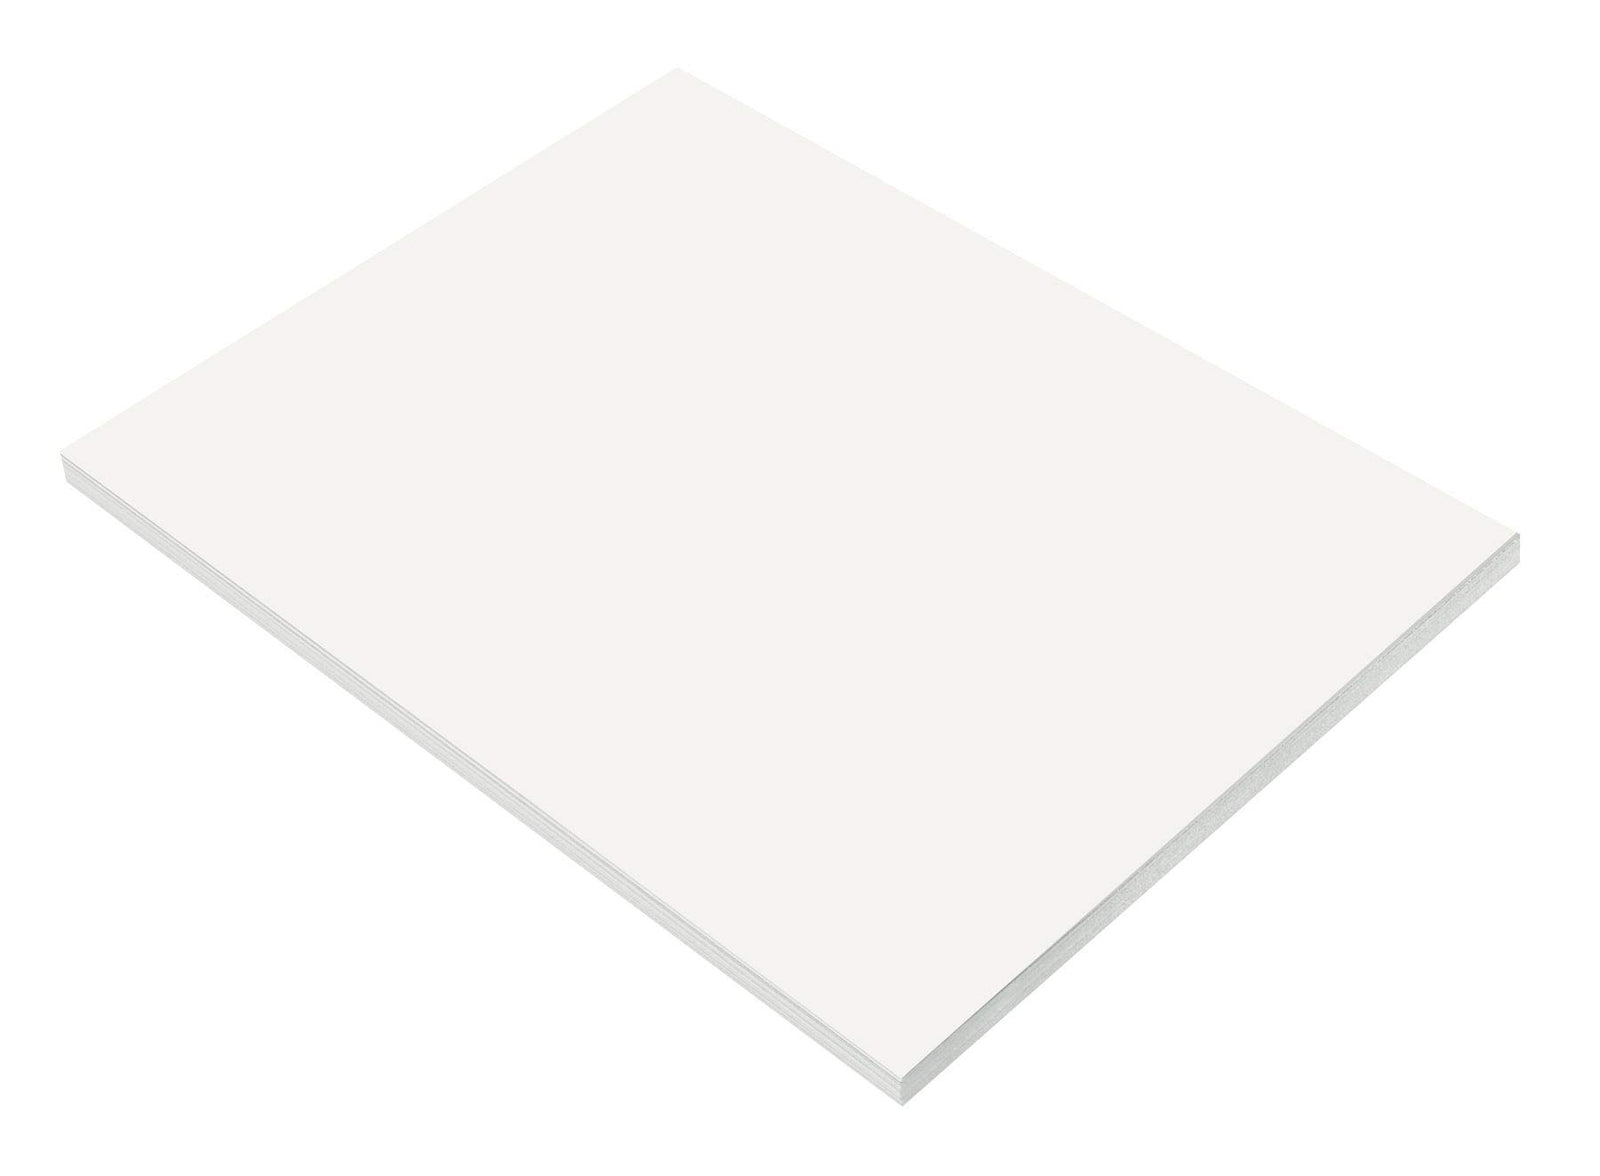 SunWorks Construction Paper, 9" x 12", White, Pack of 50